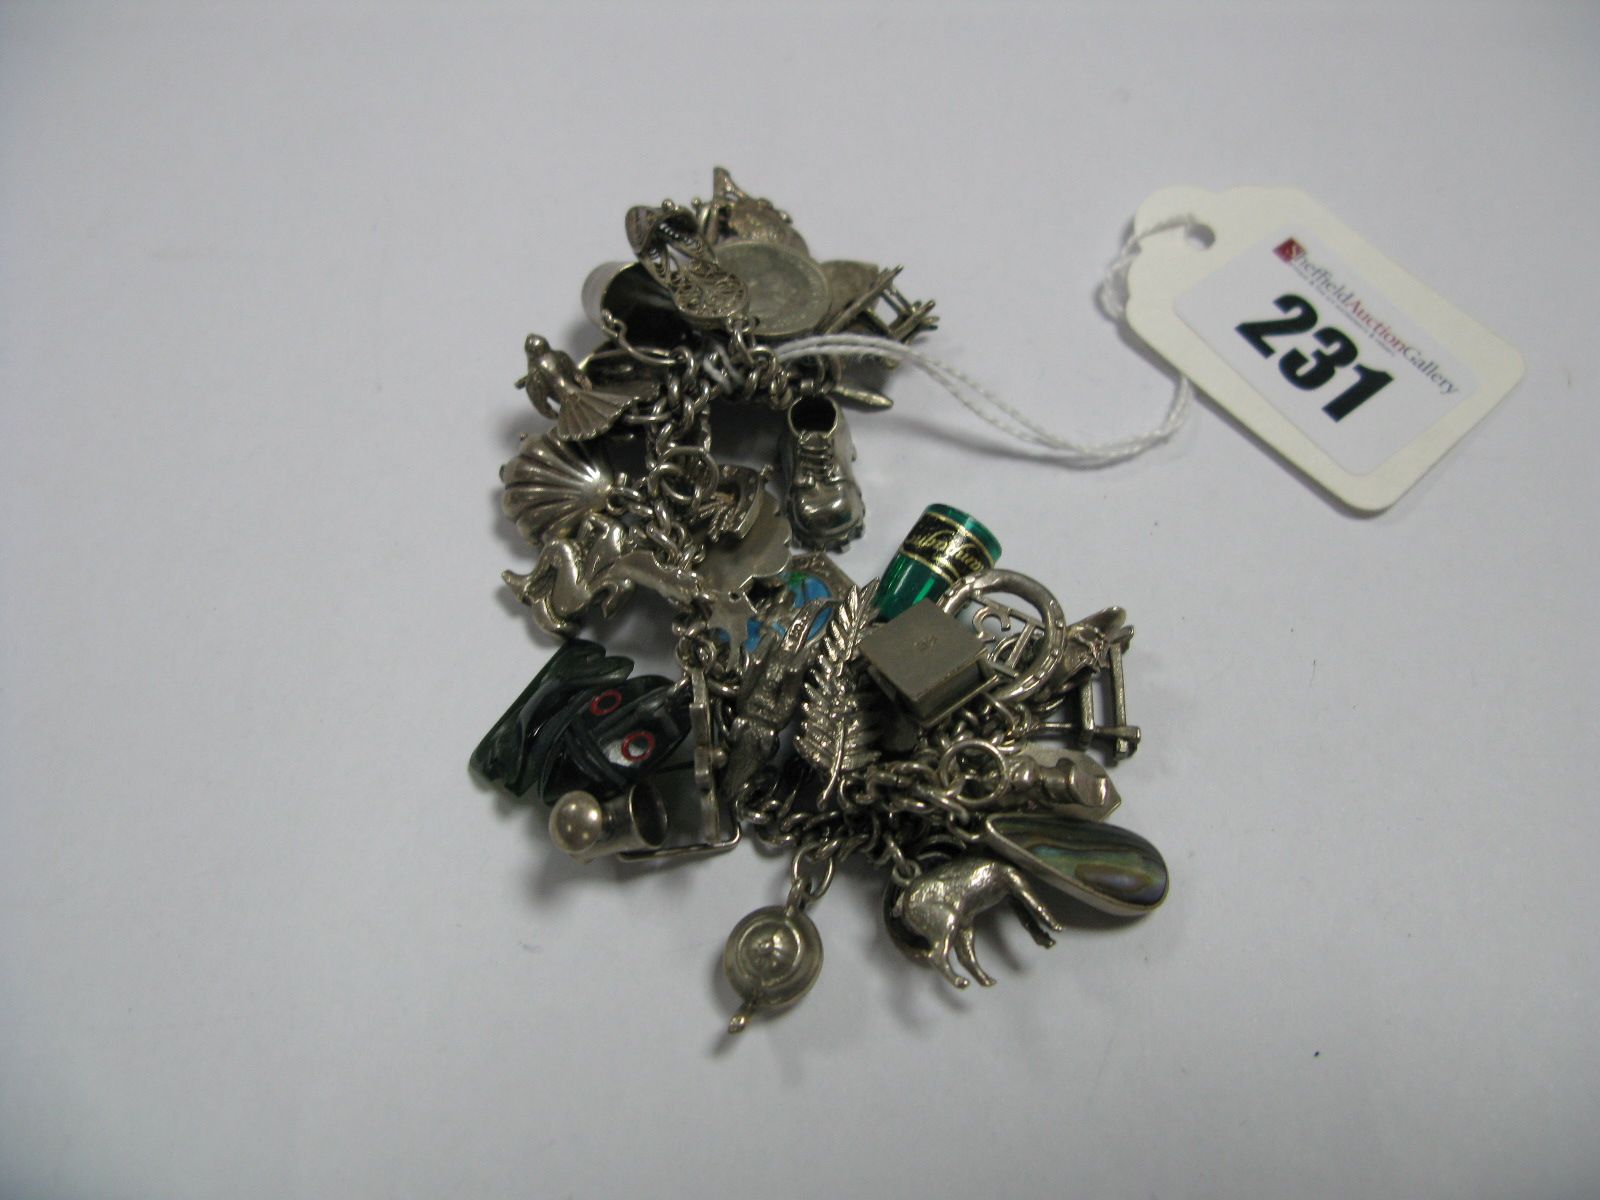 A Curb Link Charm Bracelet, suspending numerous novelty charm pendants.